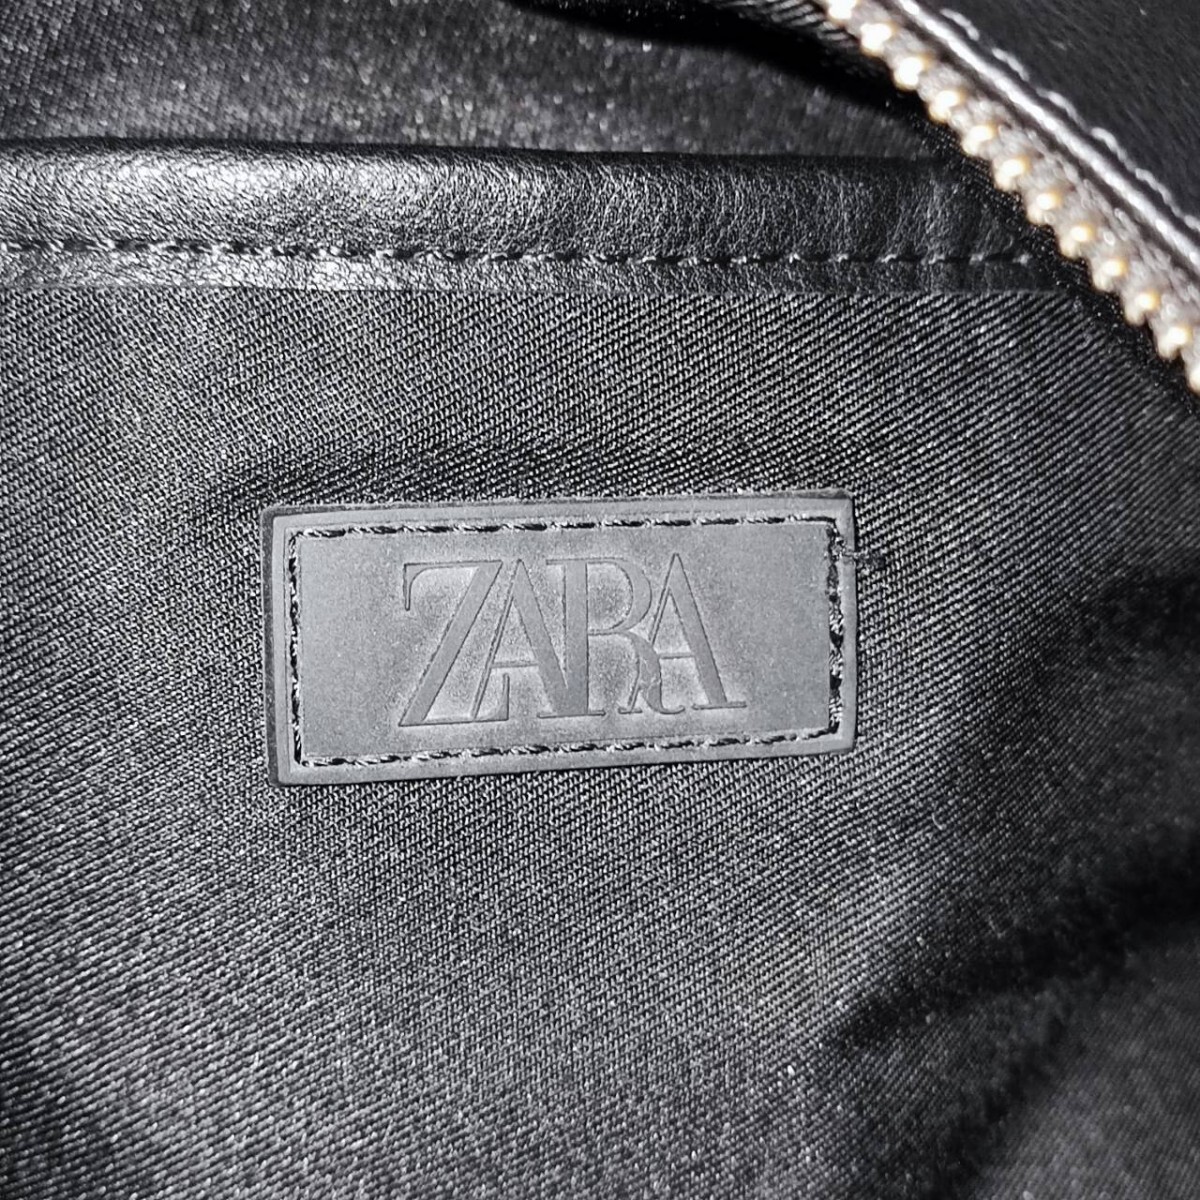  прекрасный товар супер большая вместимость! 2way Zara большая сумка плечо кожа ZARA бизнес портфель мужской работа A4 возможно плечо .. наклонный ..PC возможно ходить на работу сумка 